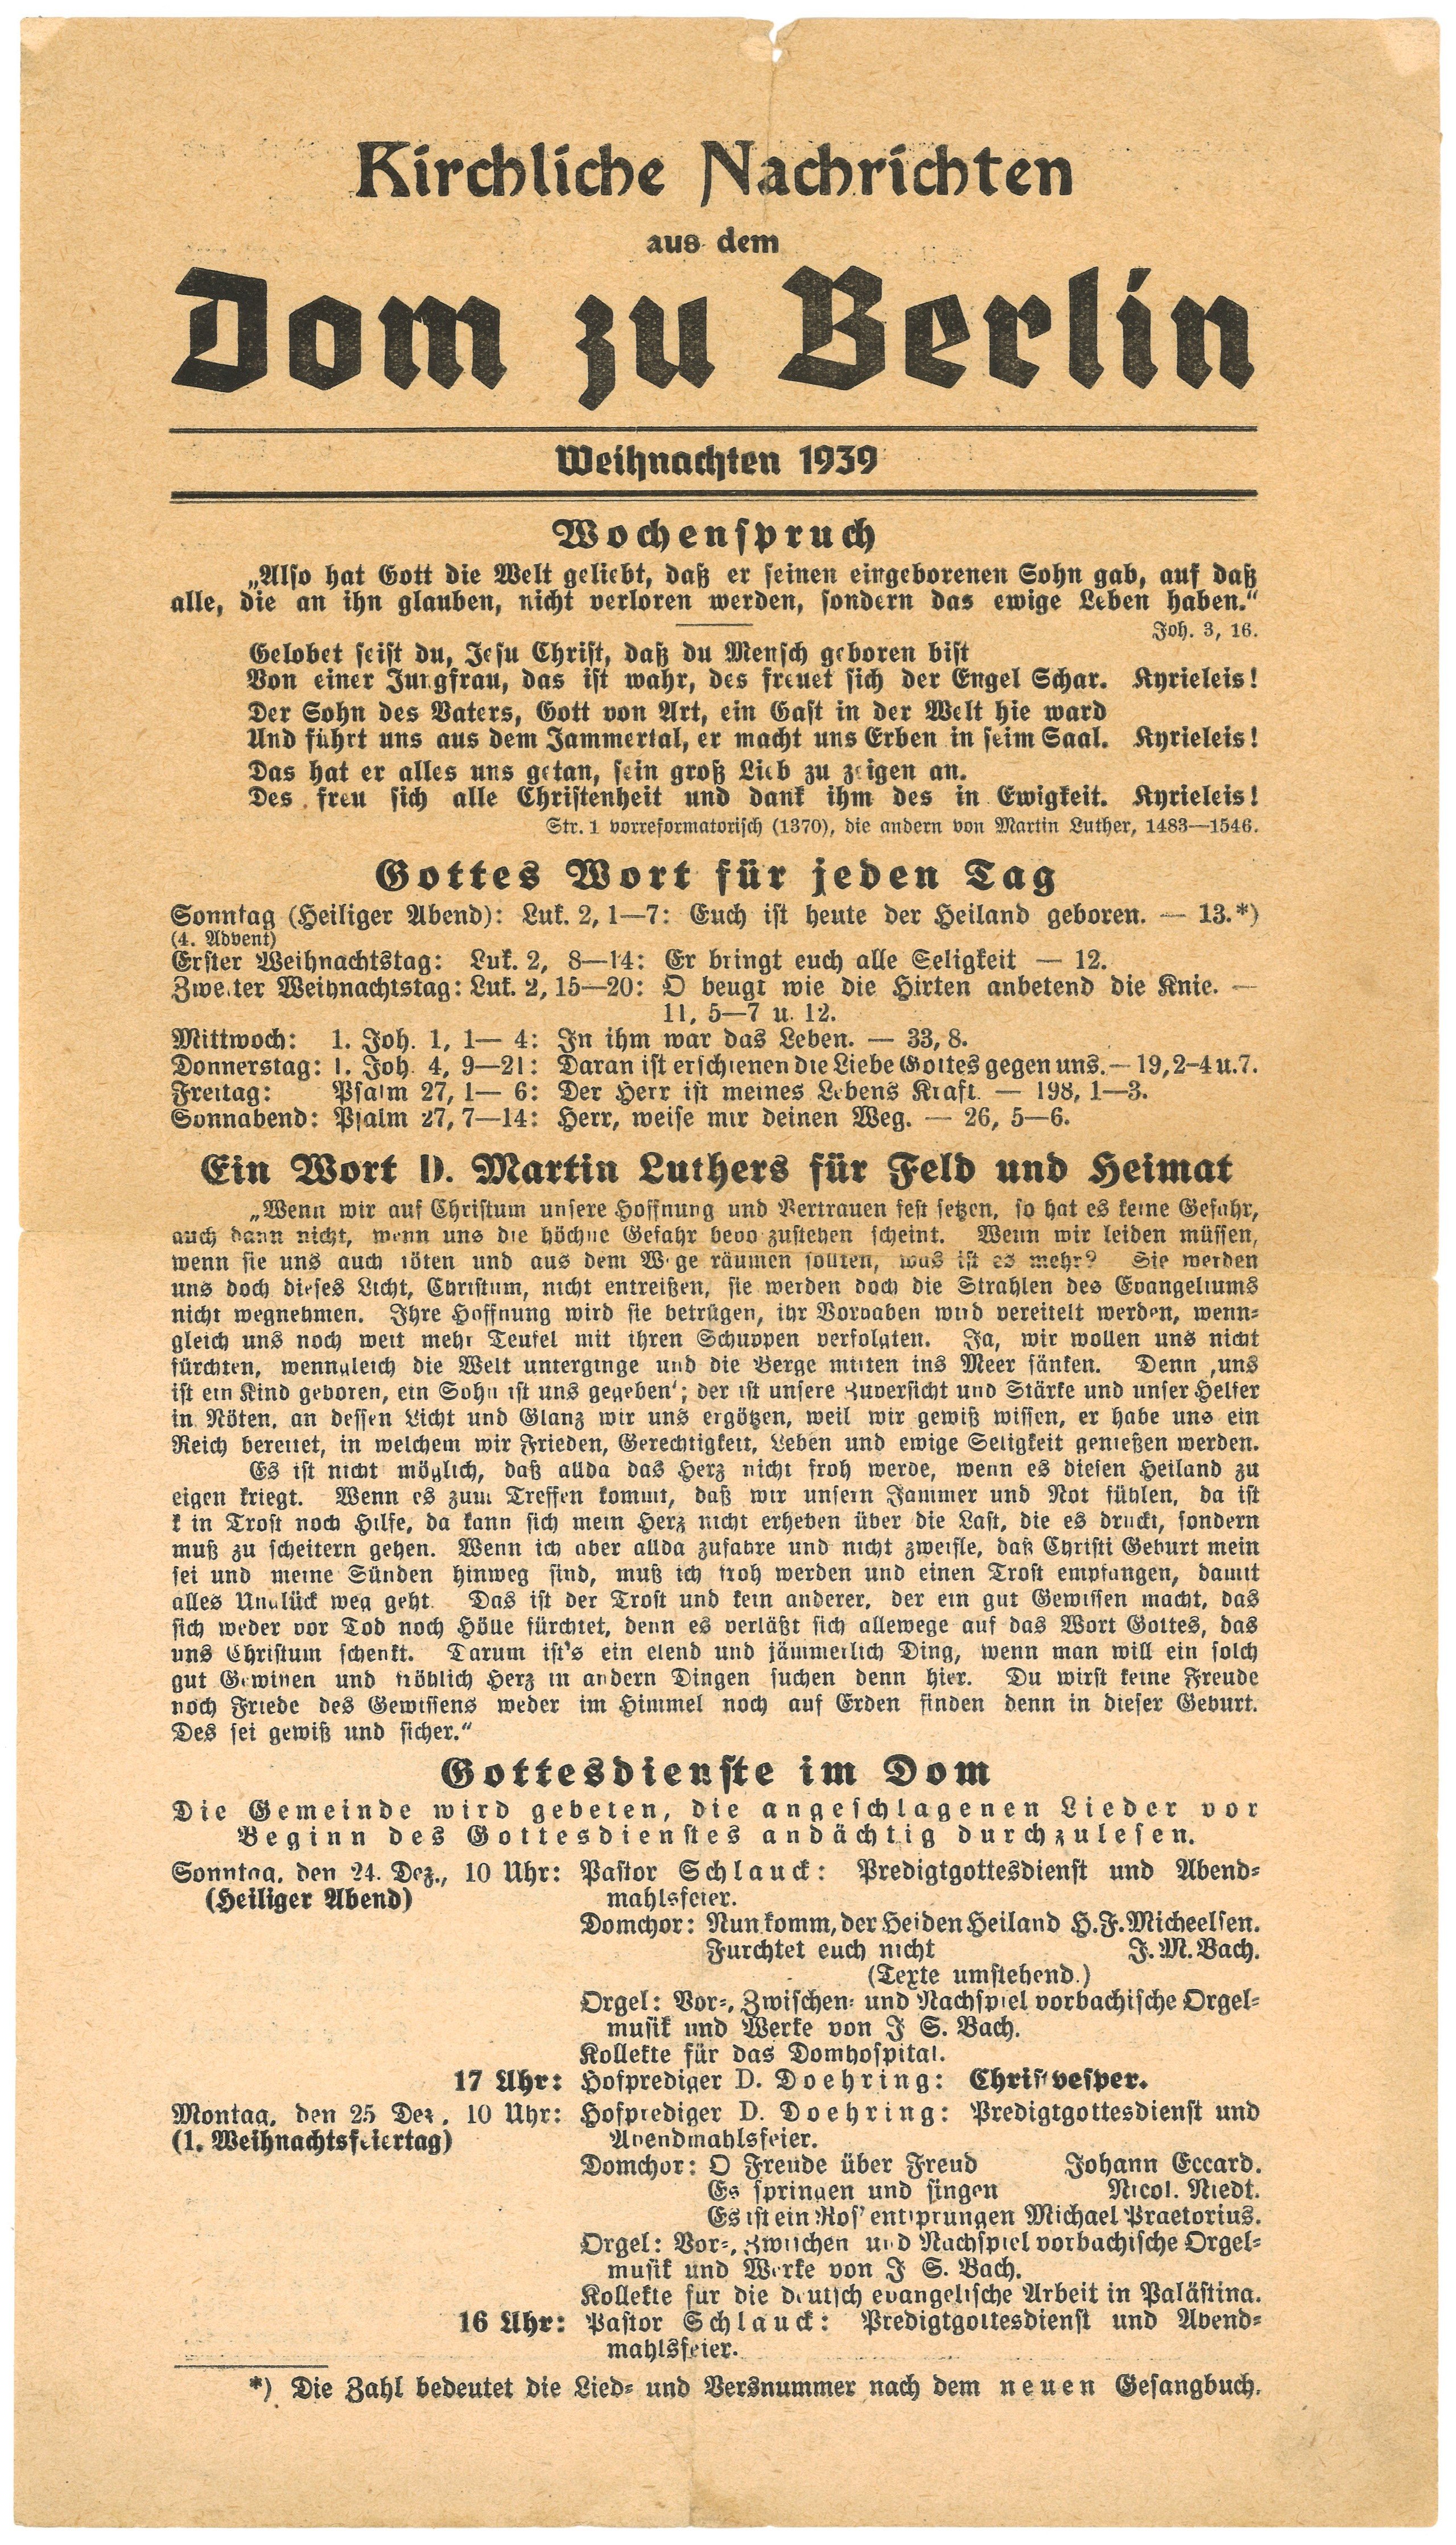 Kirchliche Nachrichten aus dem Dom zu Berlin für Weihnachten 1939 (Landesgeschichtliche Vereinigung für die Mark Brandenburg e.V., Archiv CC BY)